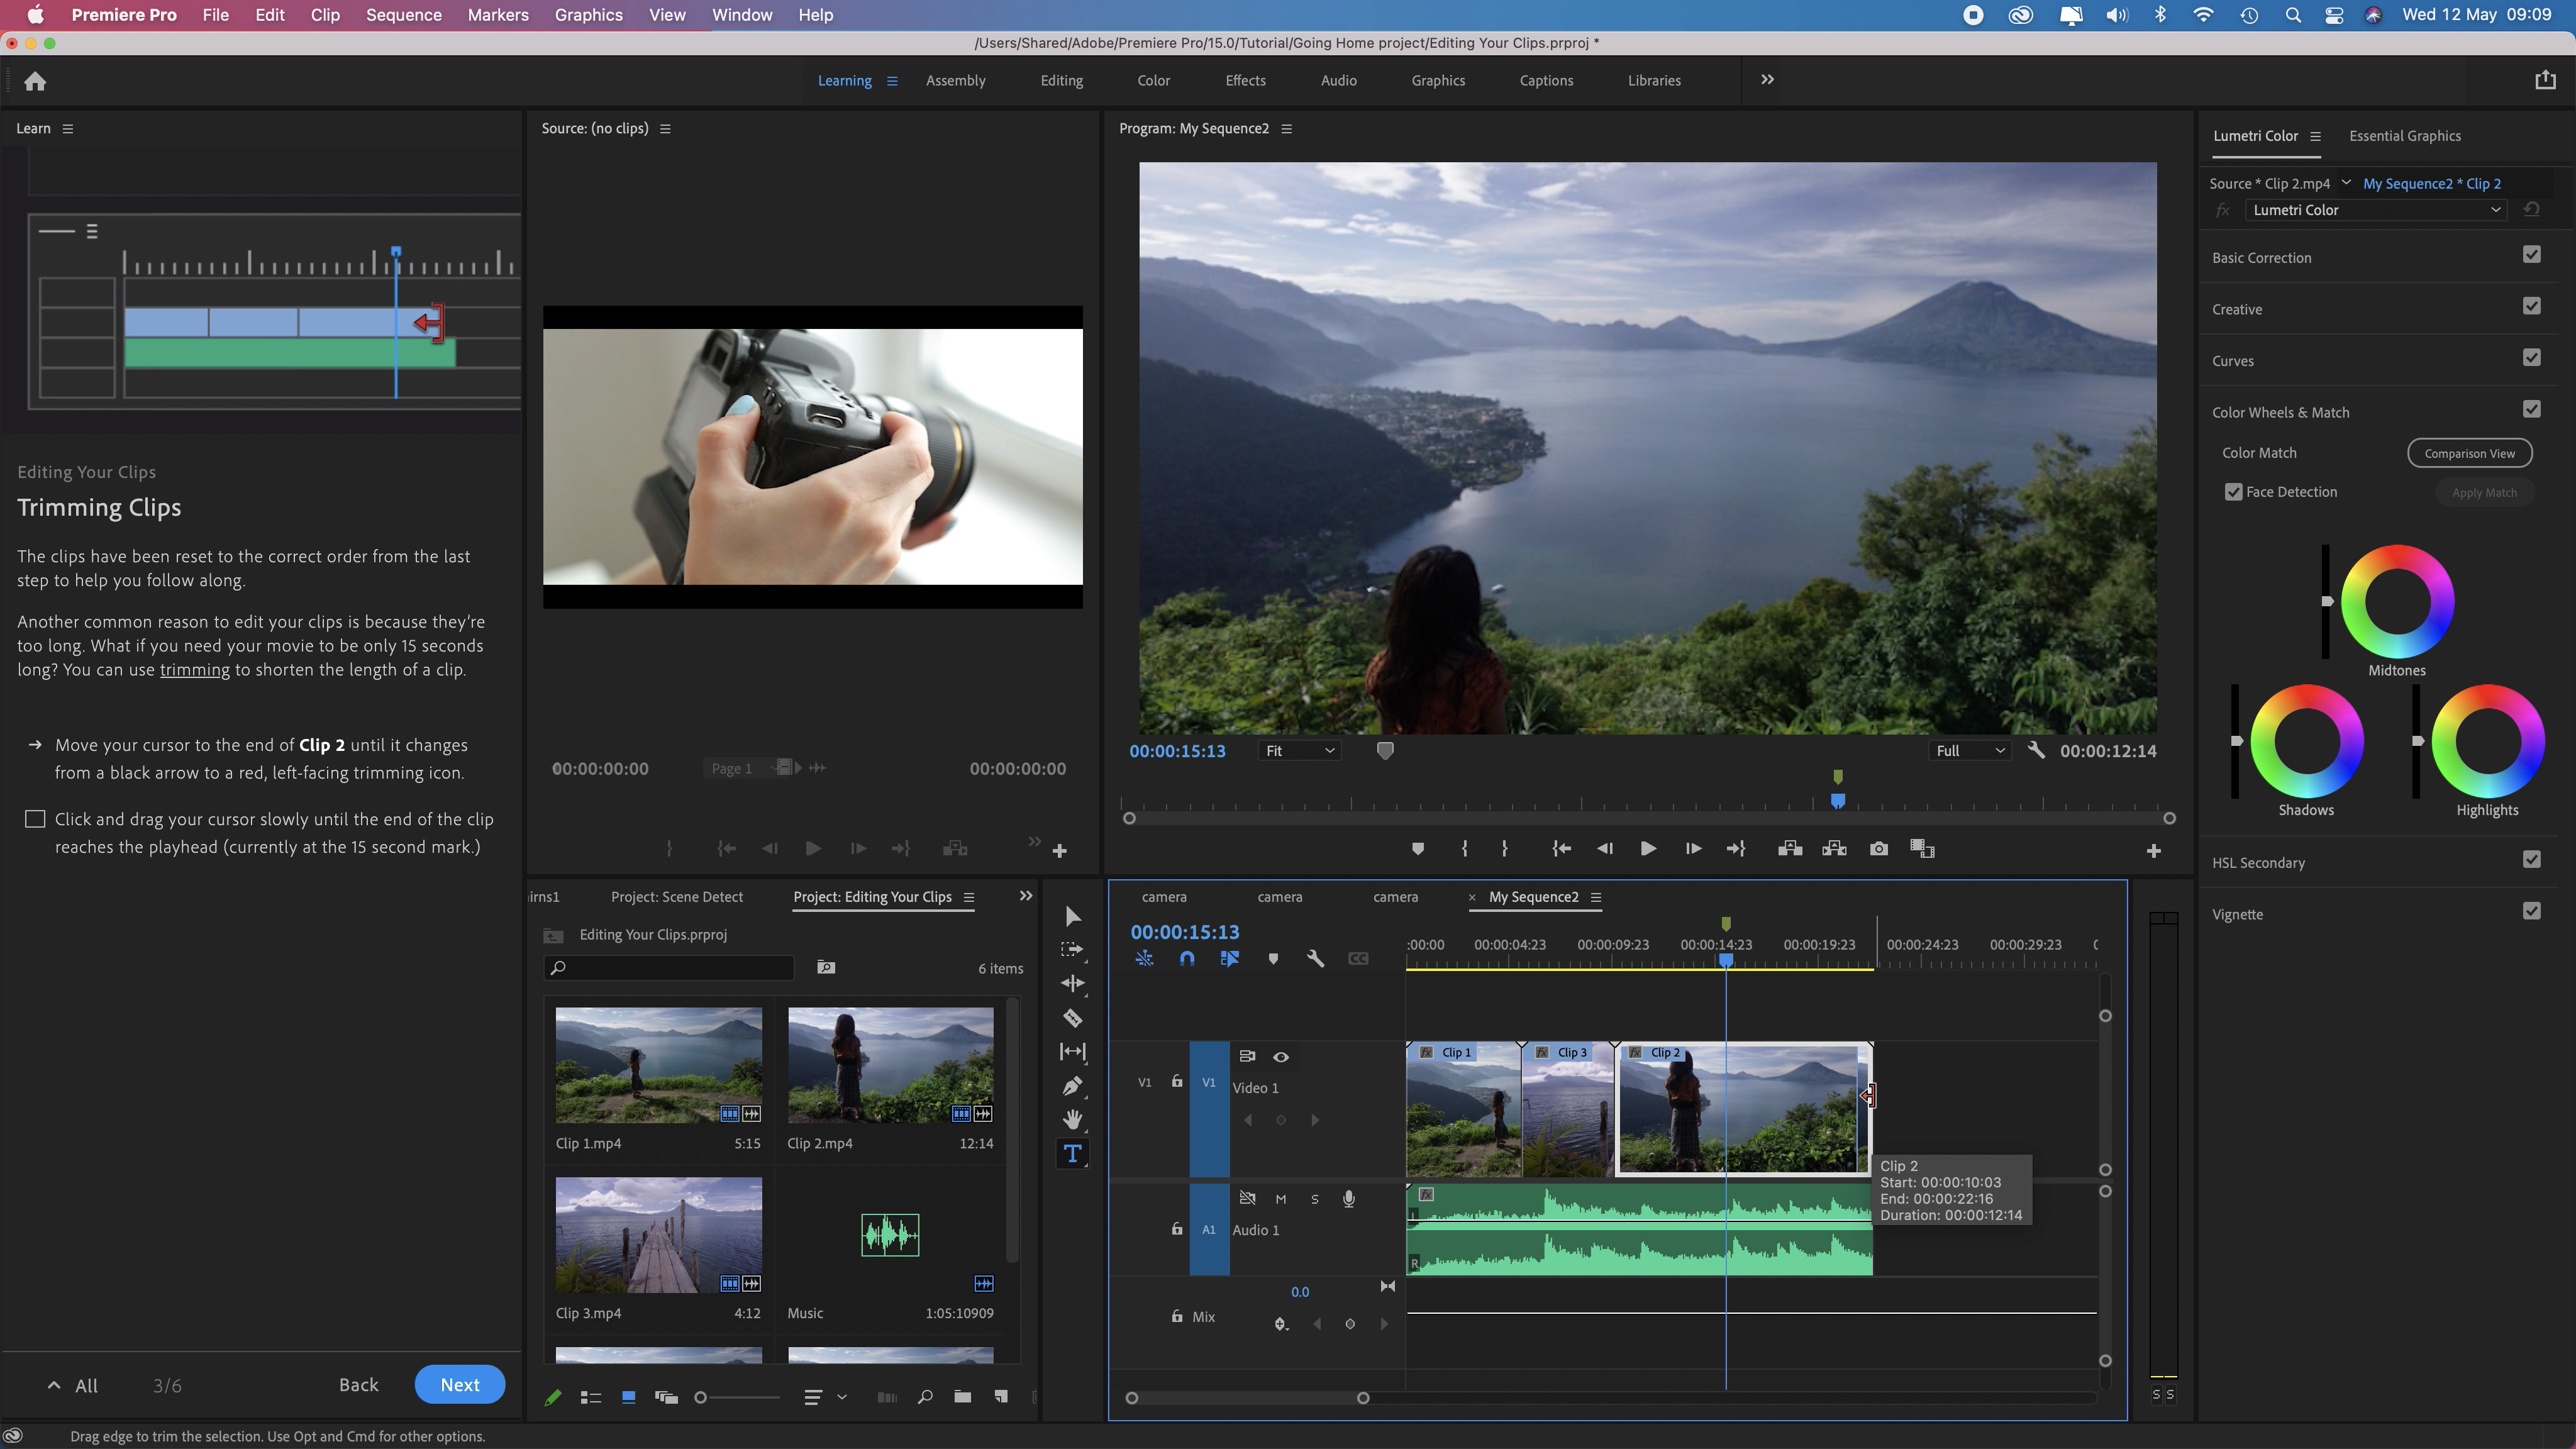 Adobe premiere pro 2021 review - nipodcolor